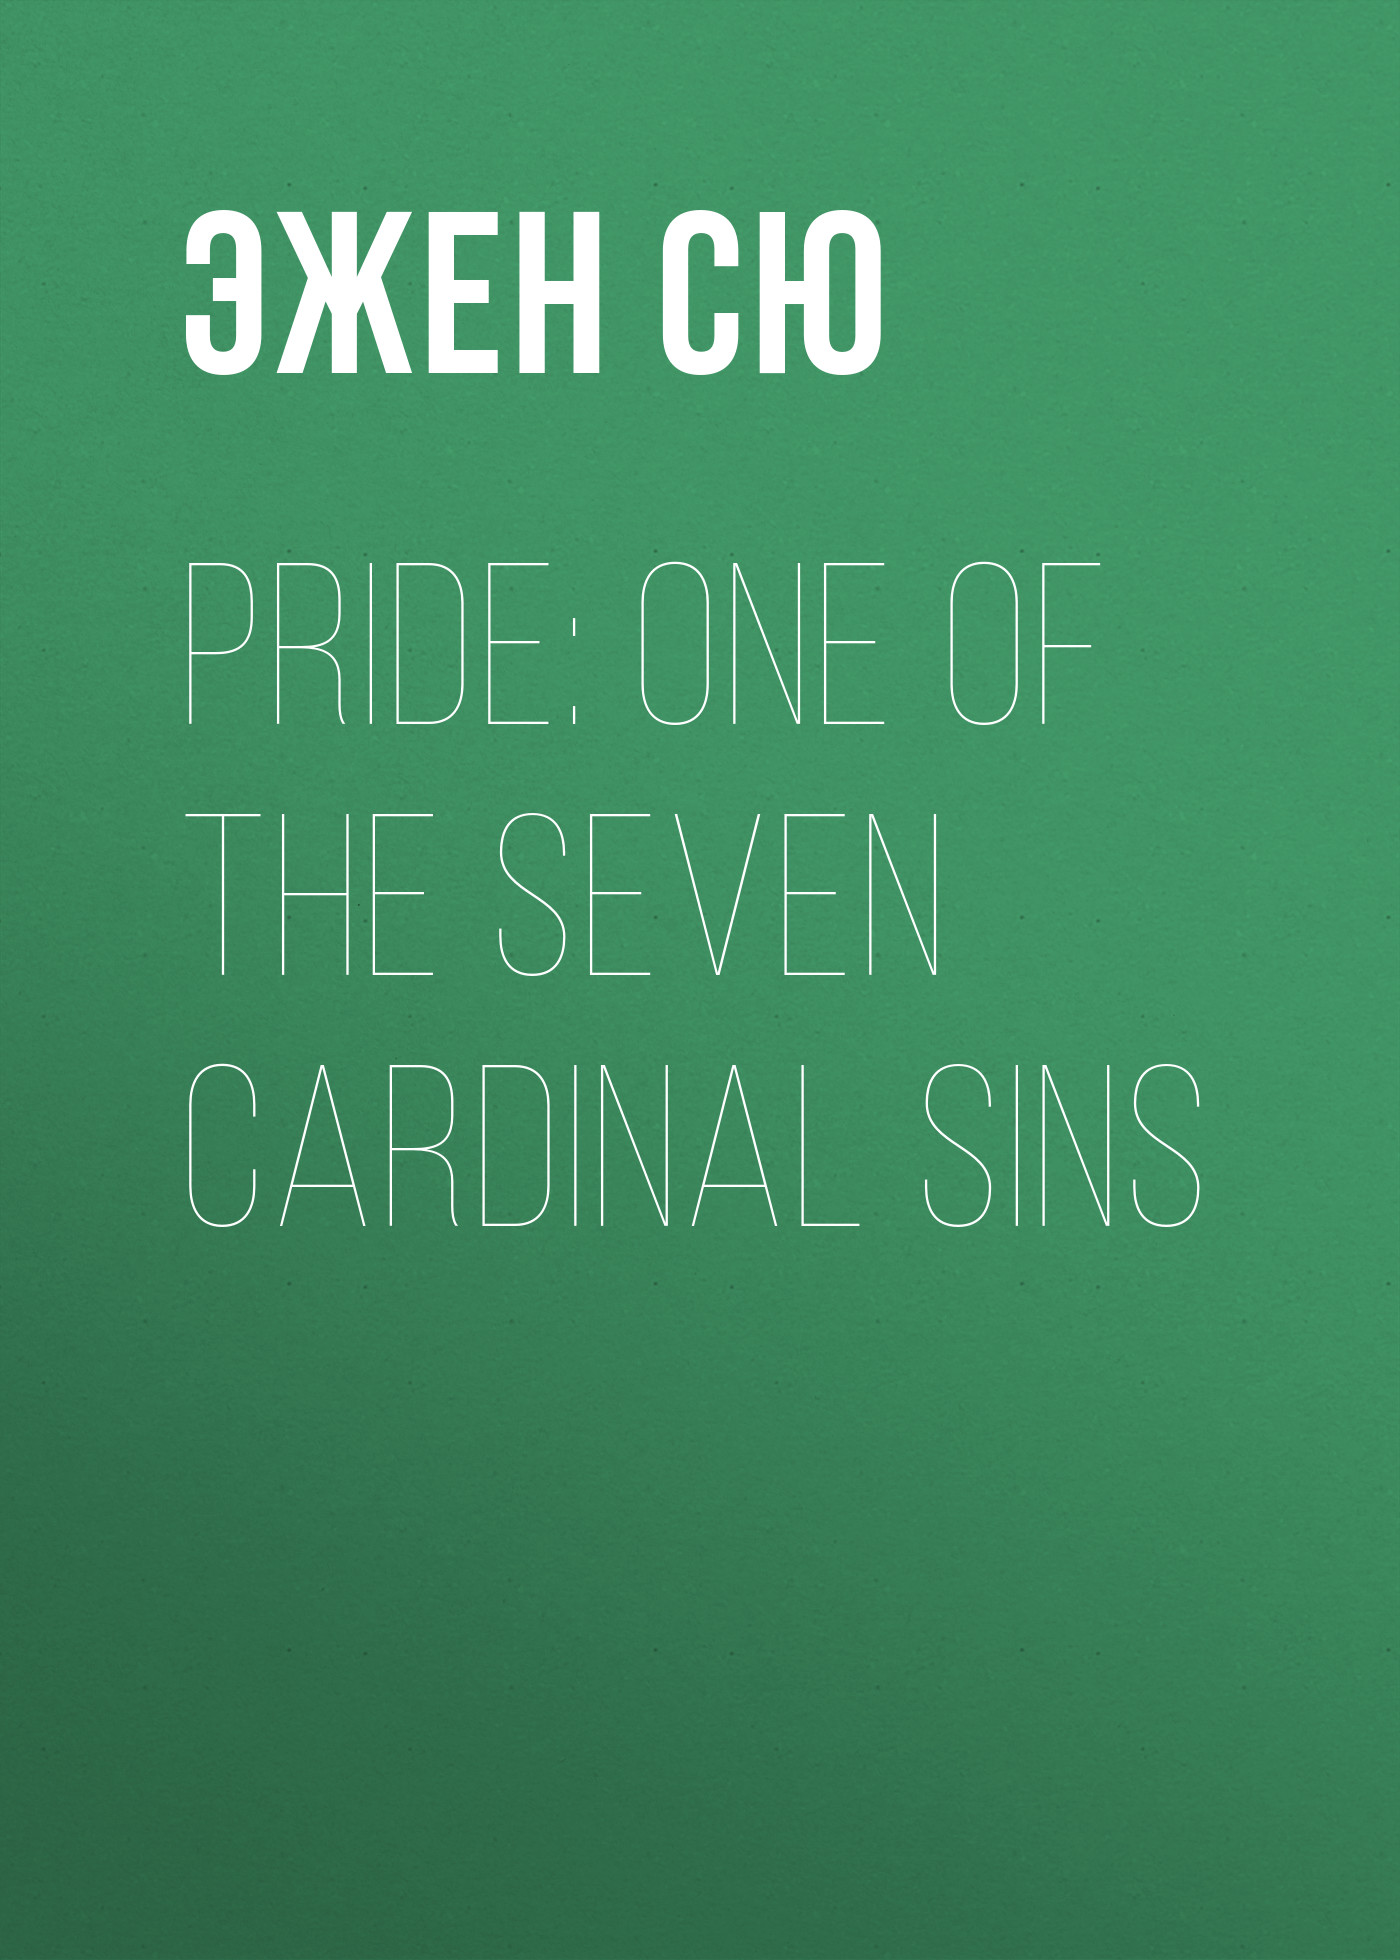 Книга Pride: One of the Seven Cardinal Sins из серии , созданная Эжен Сю, может относится к жанру Литература 19 века, Зарубежная старинная литература, Зарубежная классика. Стоимость электронной книги Pride: One of the Seven Cardinal Sins с идентификатором 25477087 составляет 0 руб.